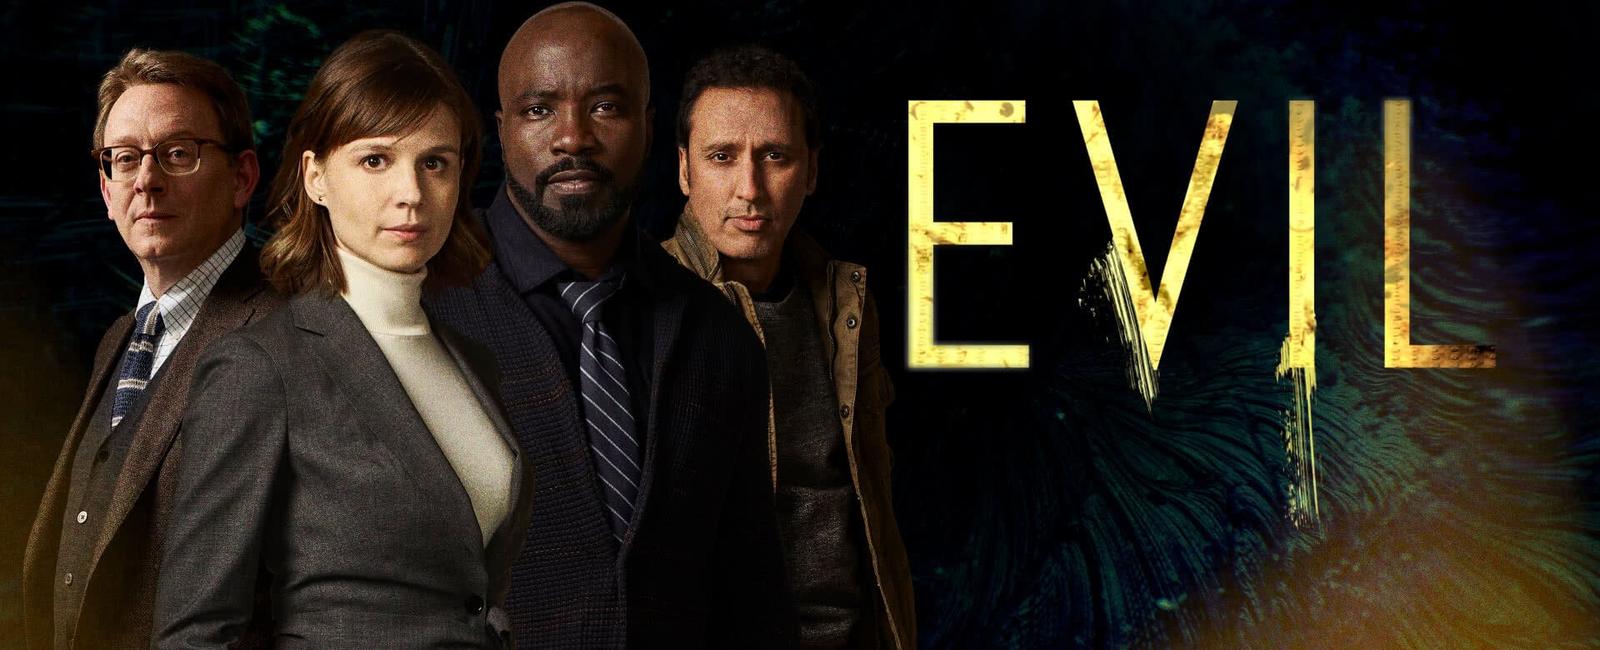 EVIL, el misterio psicológico y dramático de Universal TV